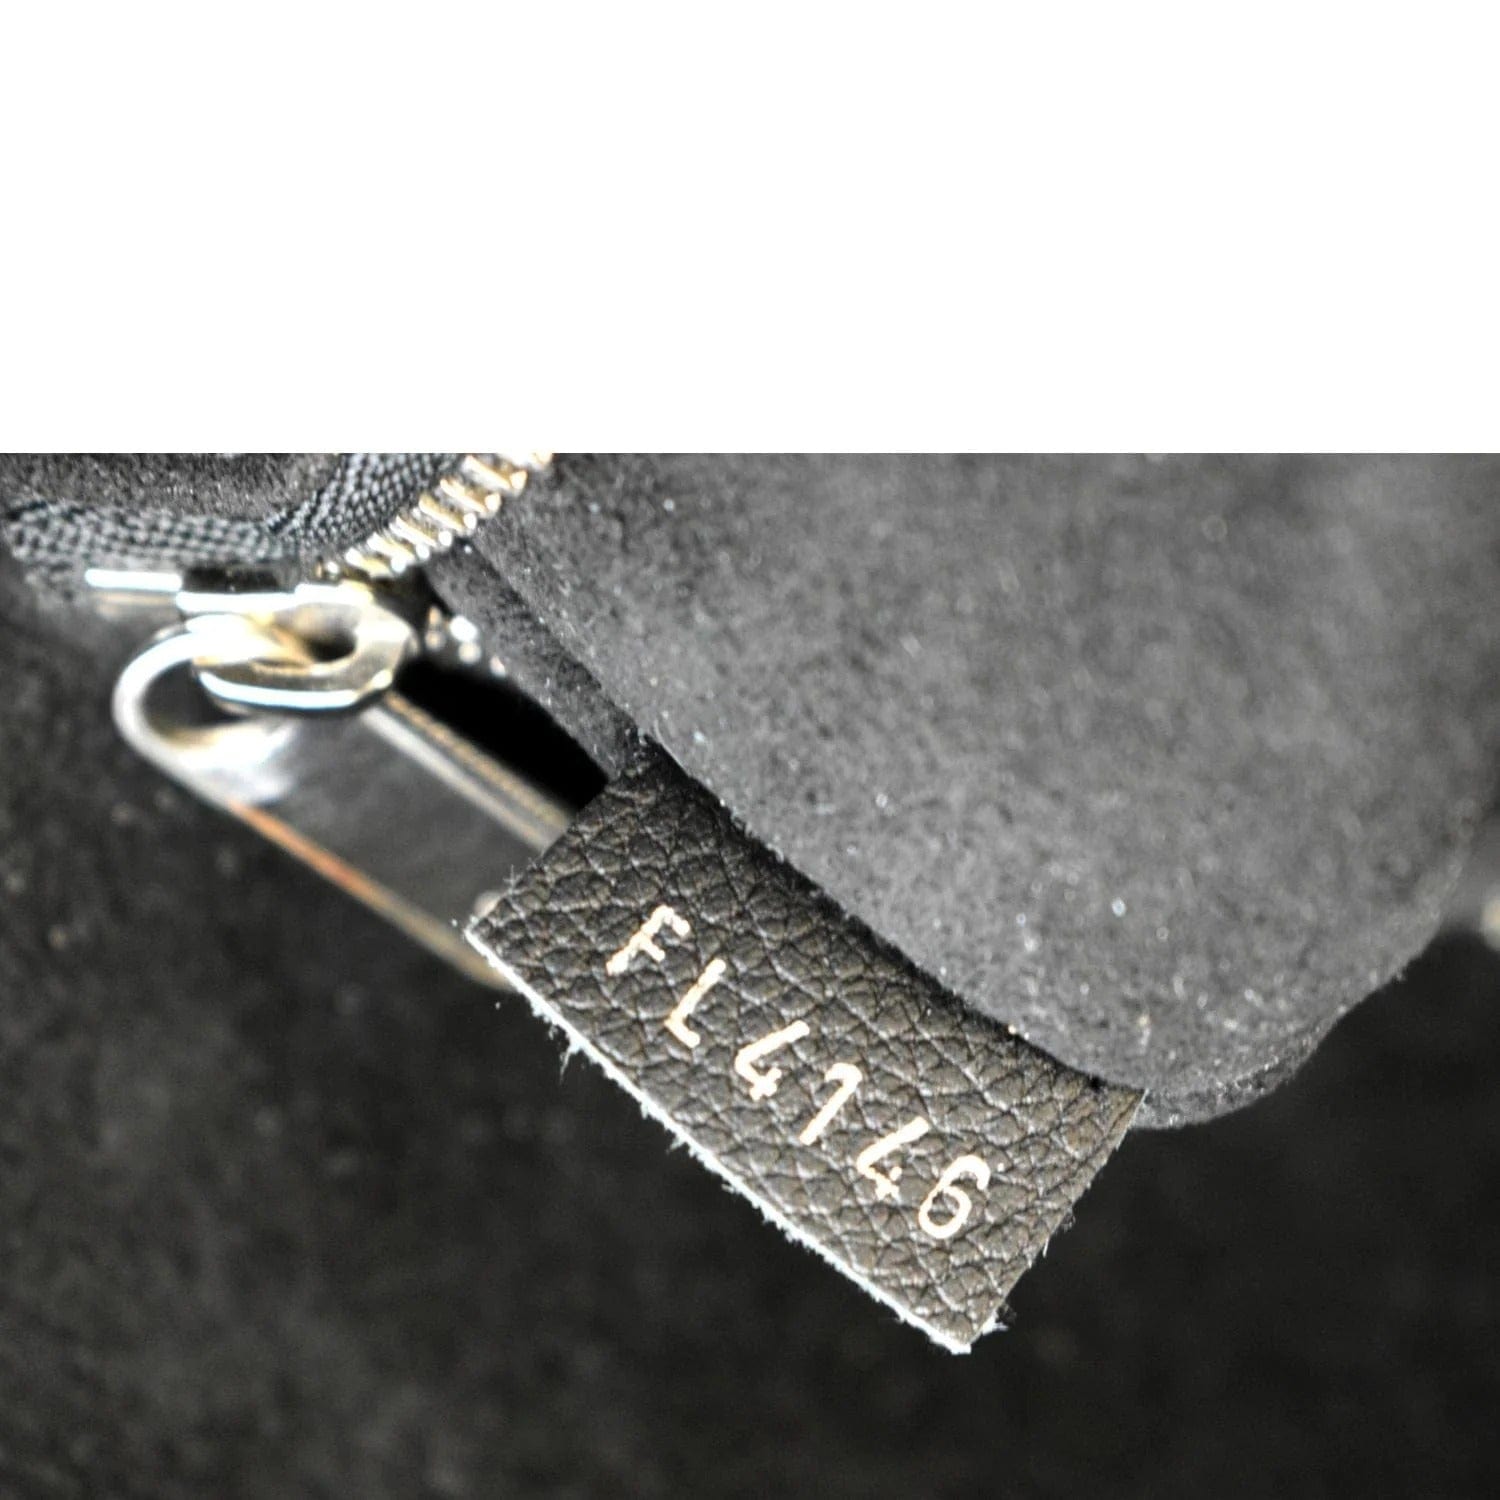 Louis Vuitton, Bags, Louis Vuitton Tote Lockme Cabas Vanille Noir New  Condition Tags W Storage Bag